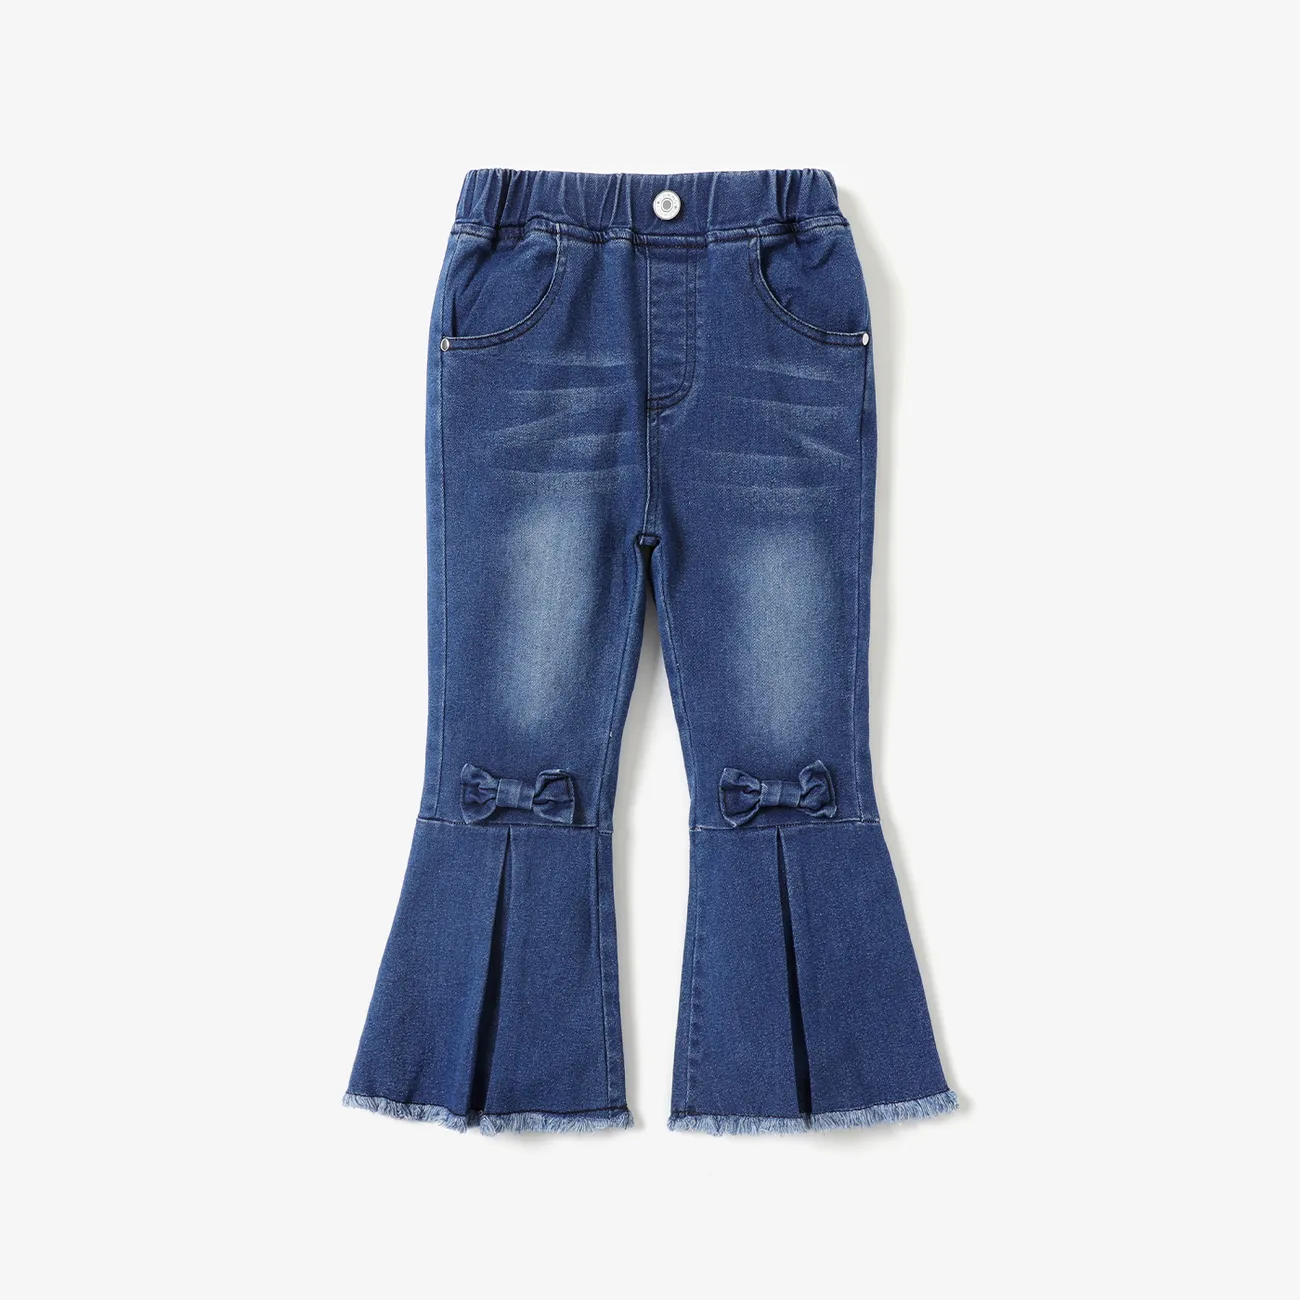 Bambino piccolo Ragazza Ipertattile Dolce Jeans Blu big image 1